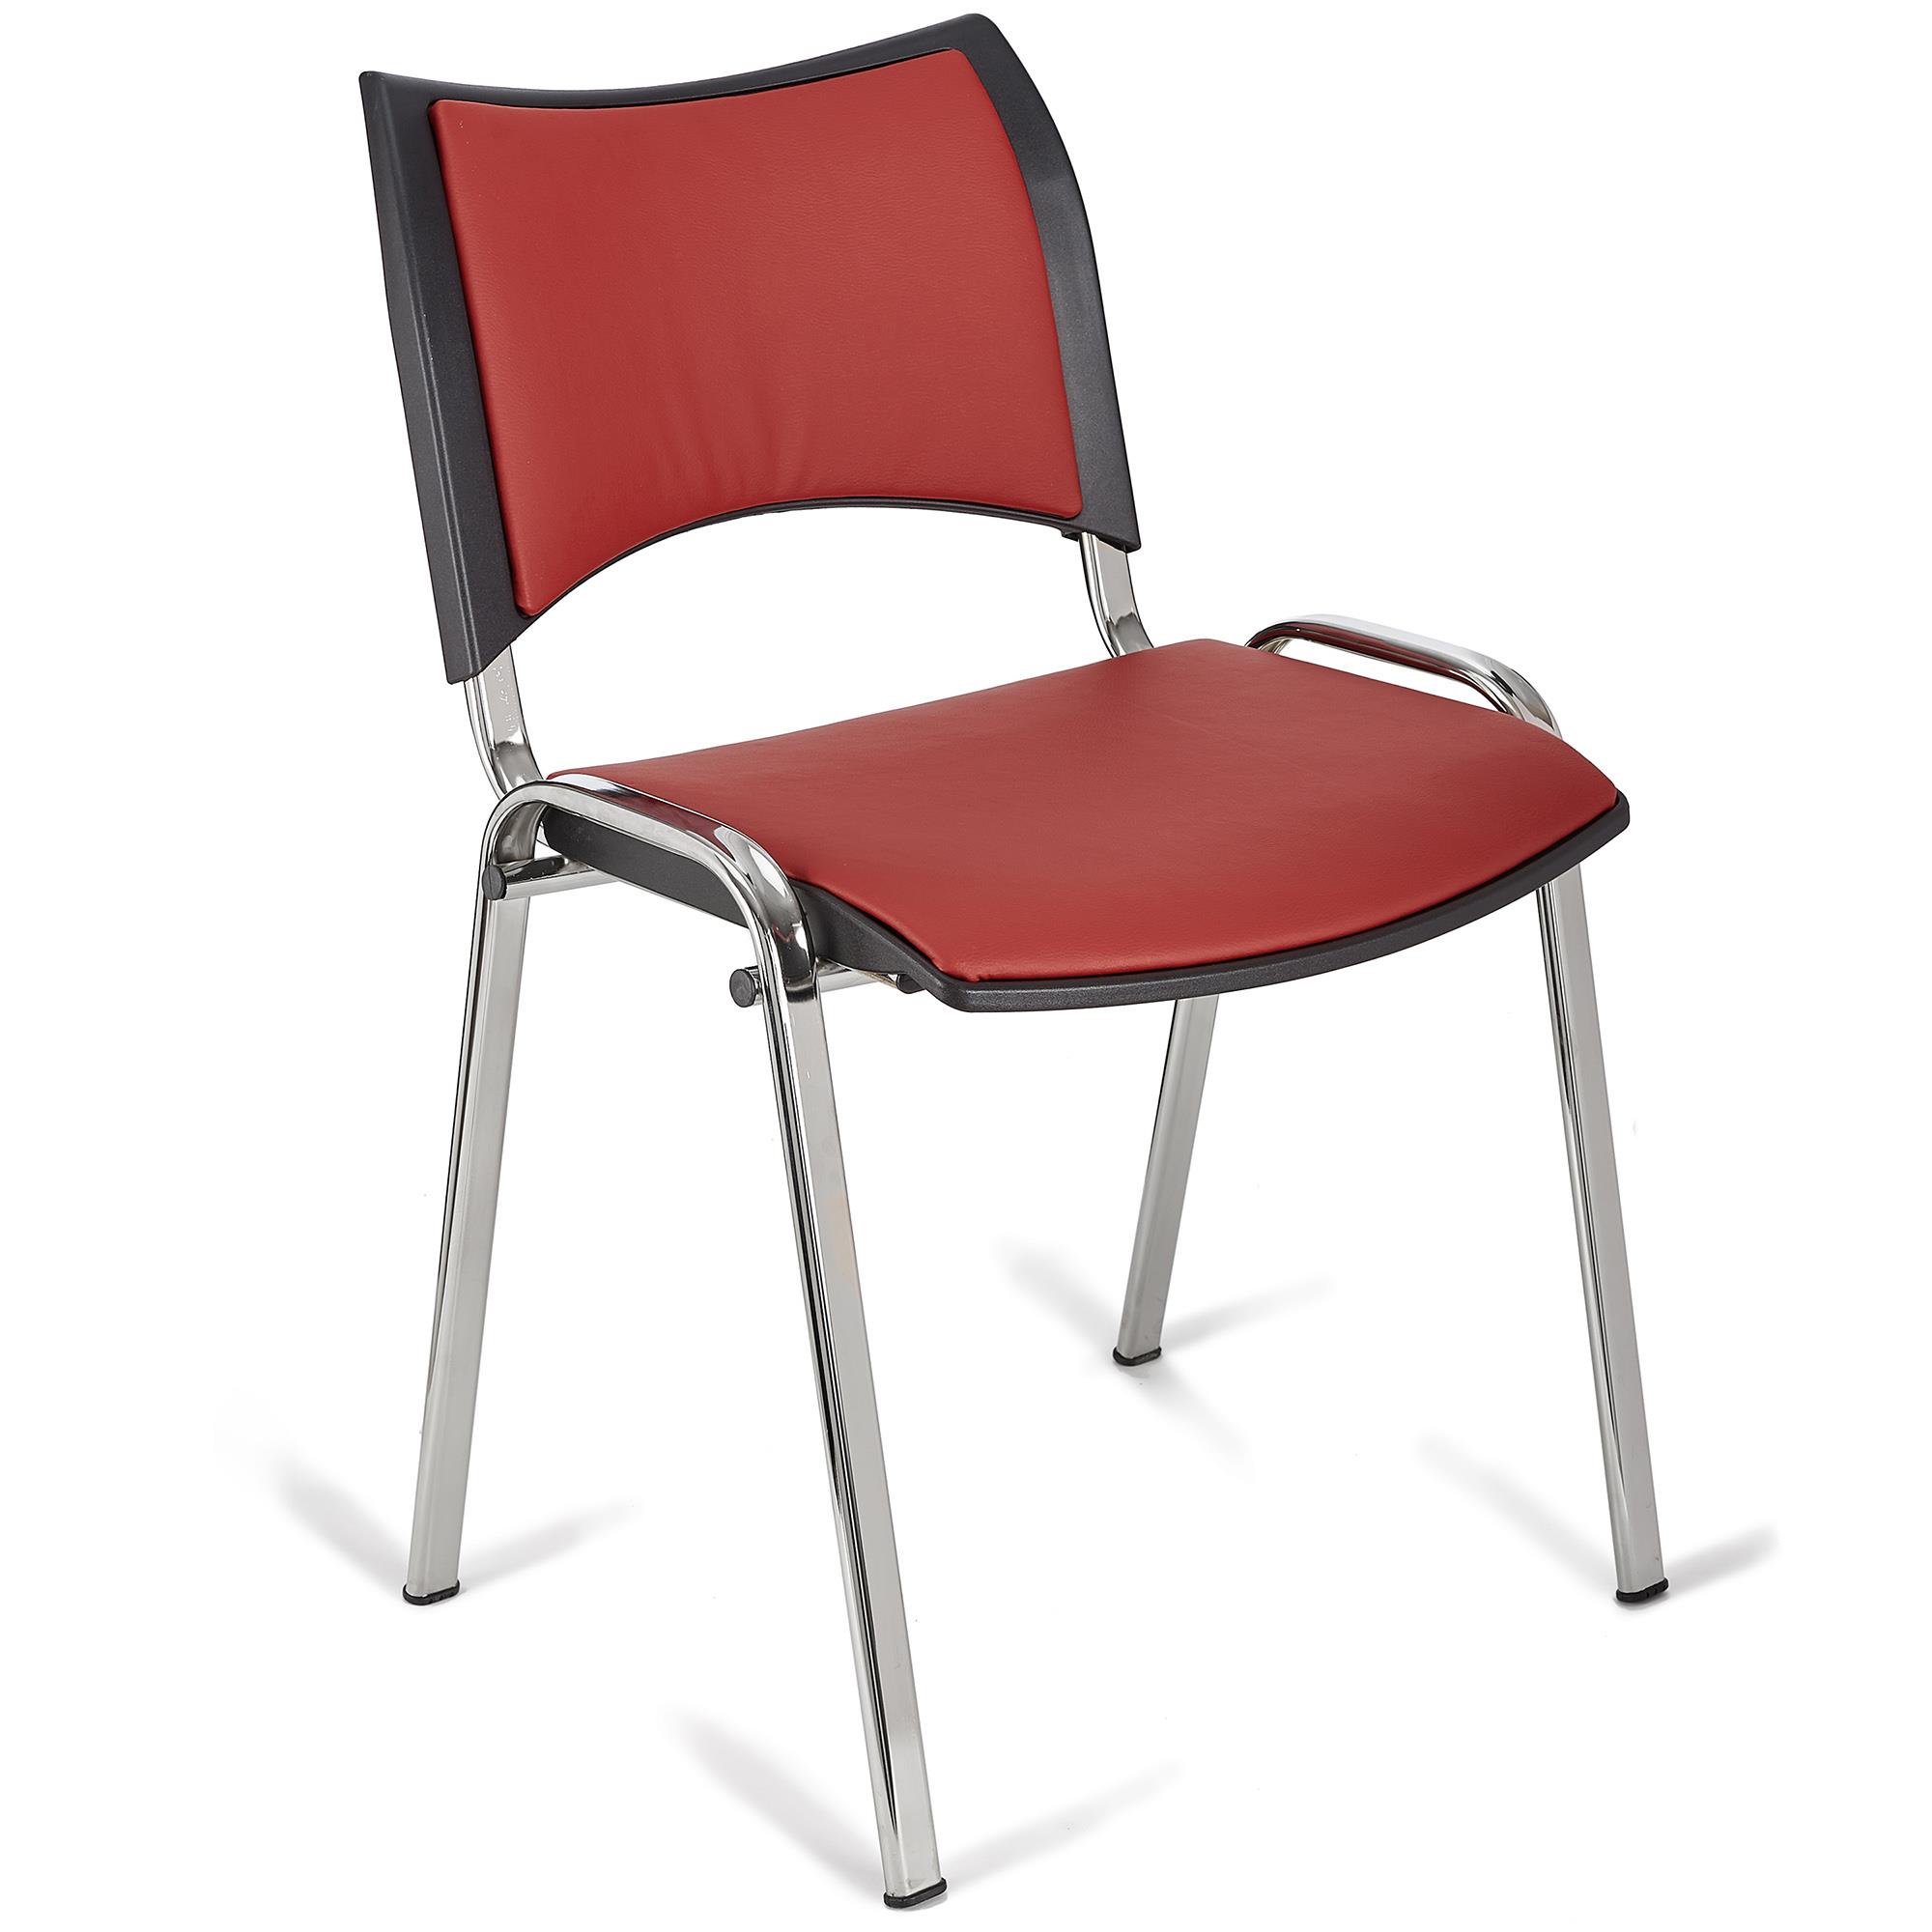 Cadeira de Visita ROMEL PELE, Prática e Empilhável, Pernas Cromadas, Vermelho